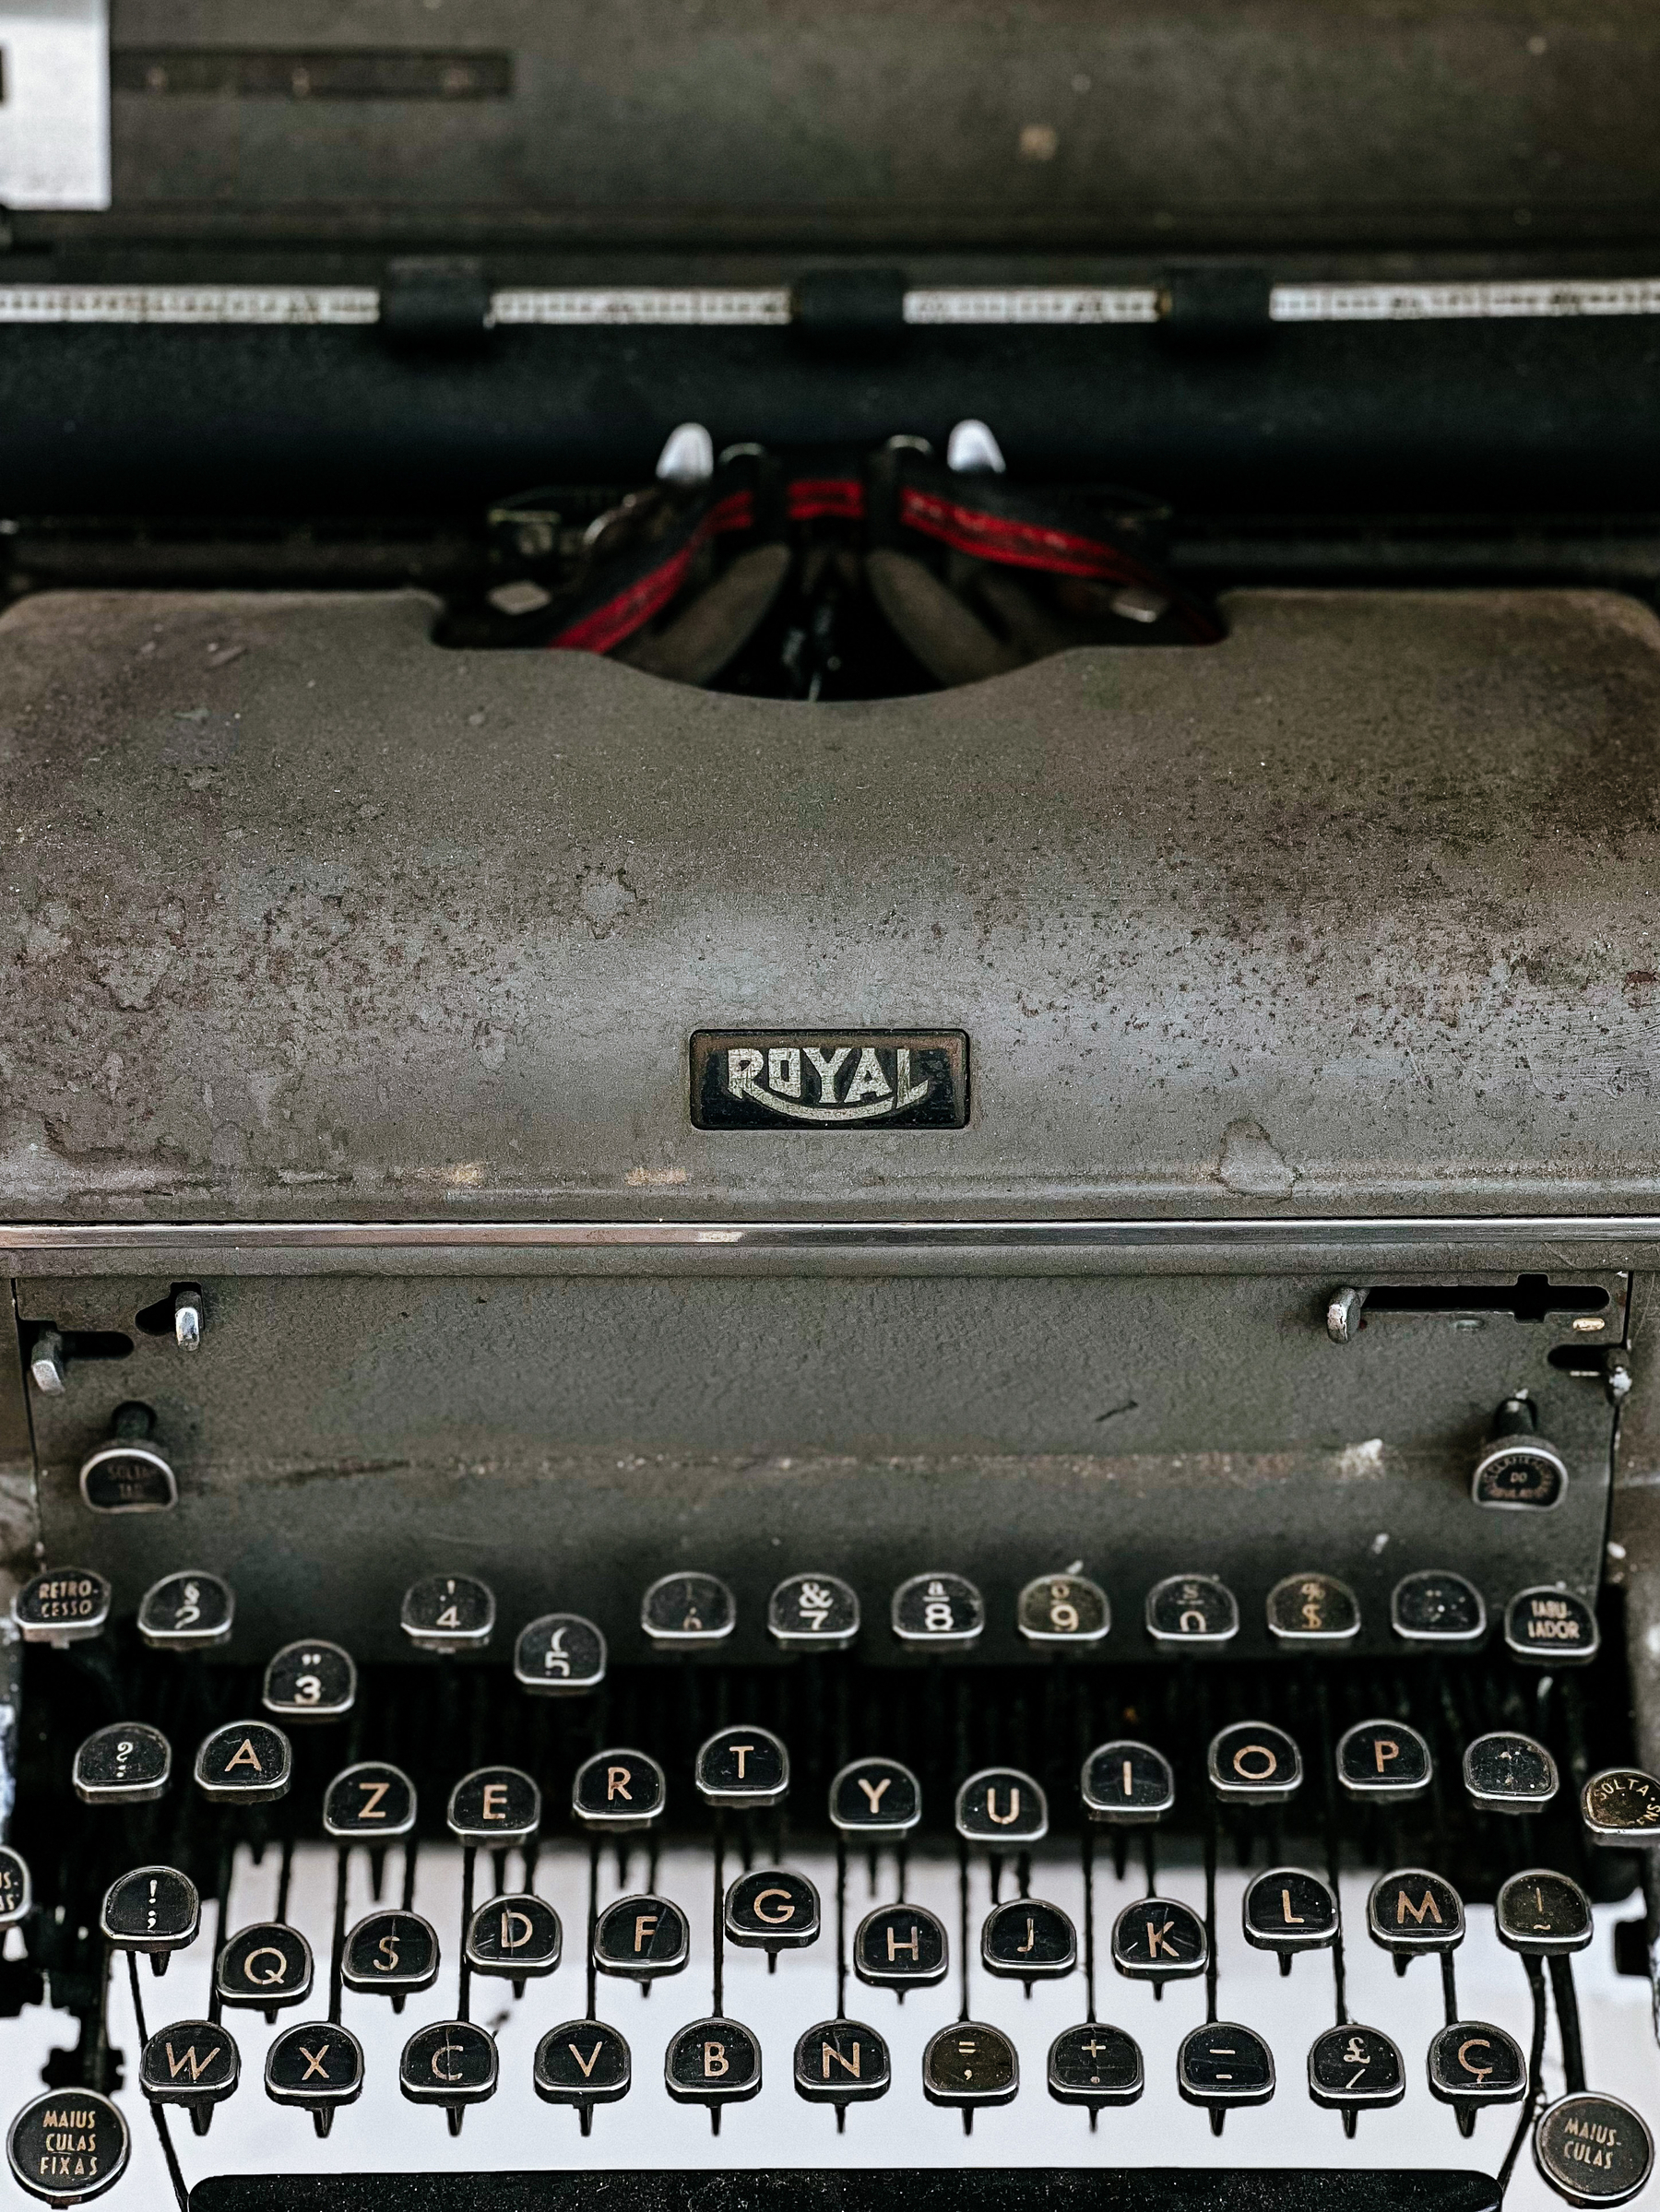 An old typewriter, “Royal”.